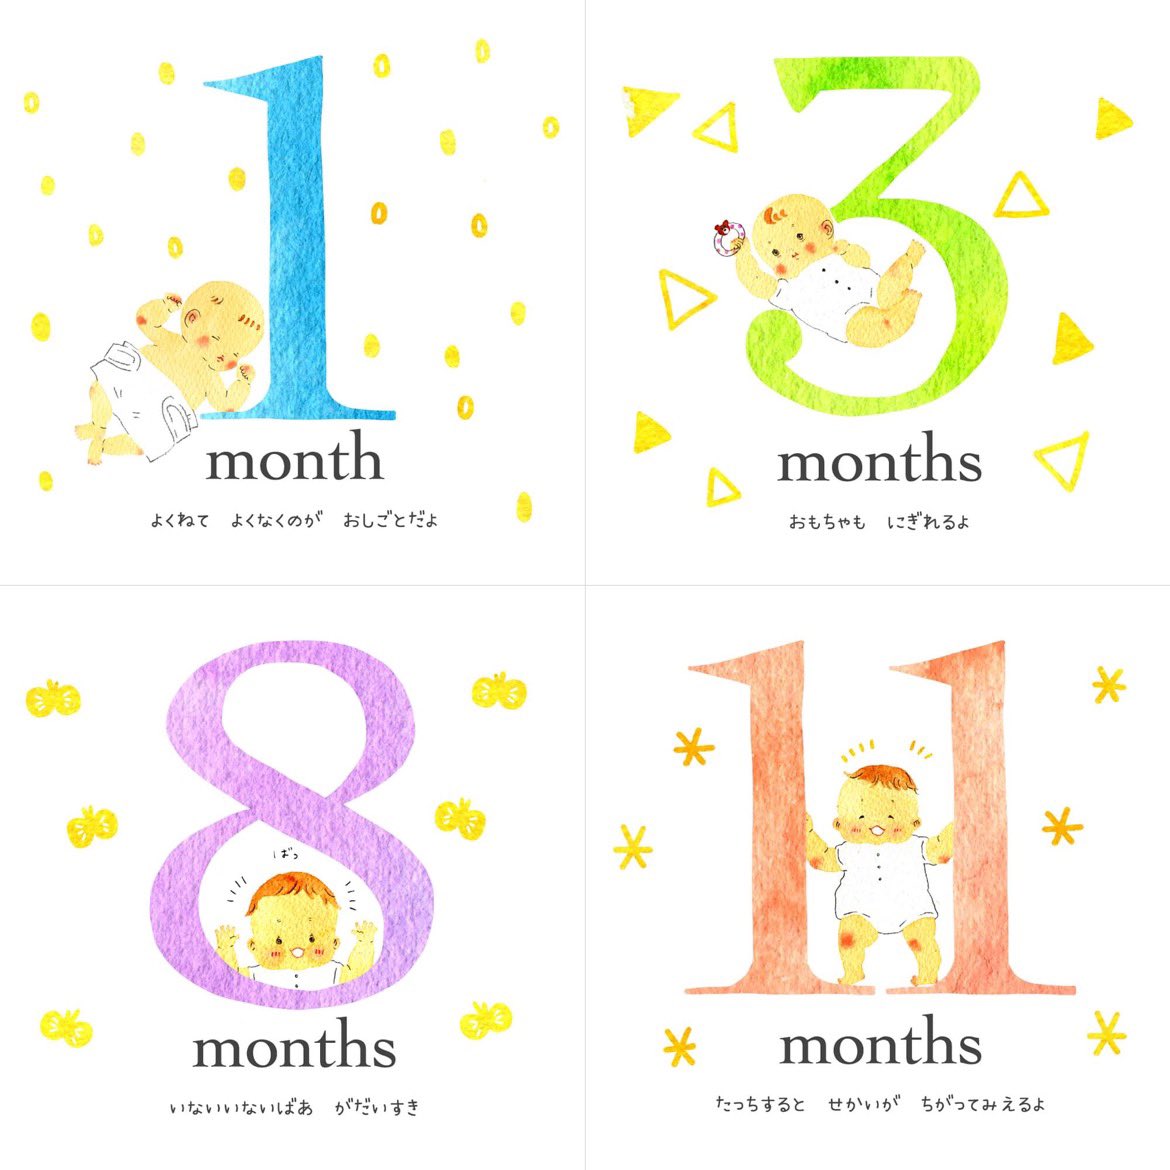 ゼクシィBabyの創刊5周年プレゼントキャンペーンで、『マタニティ&ベビー月齢カード』を作らせていただきました。

ゼクシィBabyさんでしか手に入らない
オリジナルデザインです。妊娠中から一歳まで使えるって新しい✨

私の娘が小さかった時にこういうの欲しかったなぁ。

https://t.co/UU01BOKMTg 